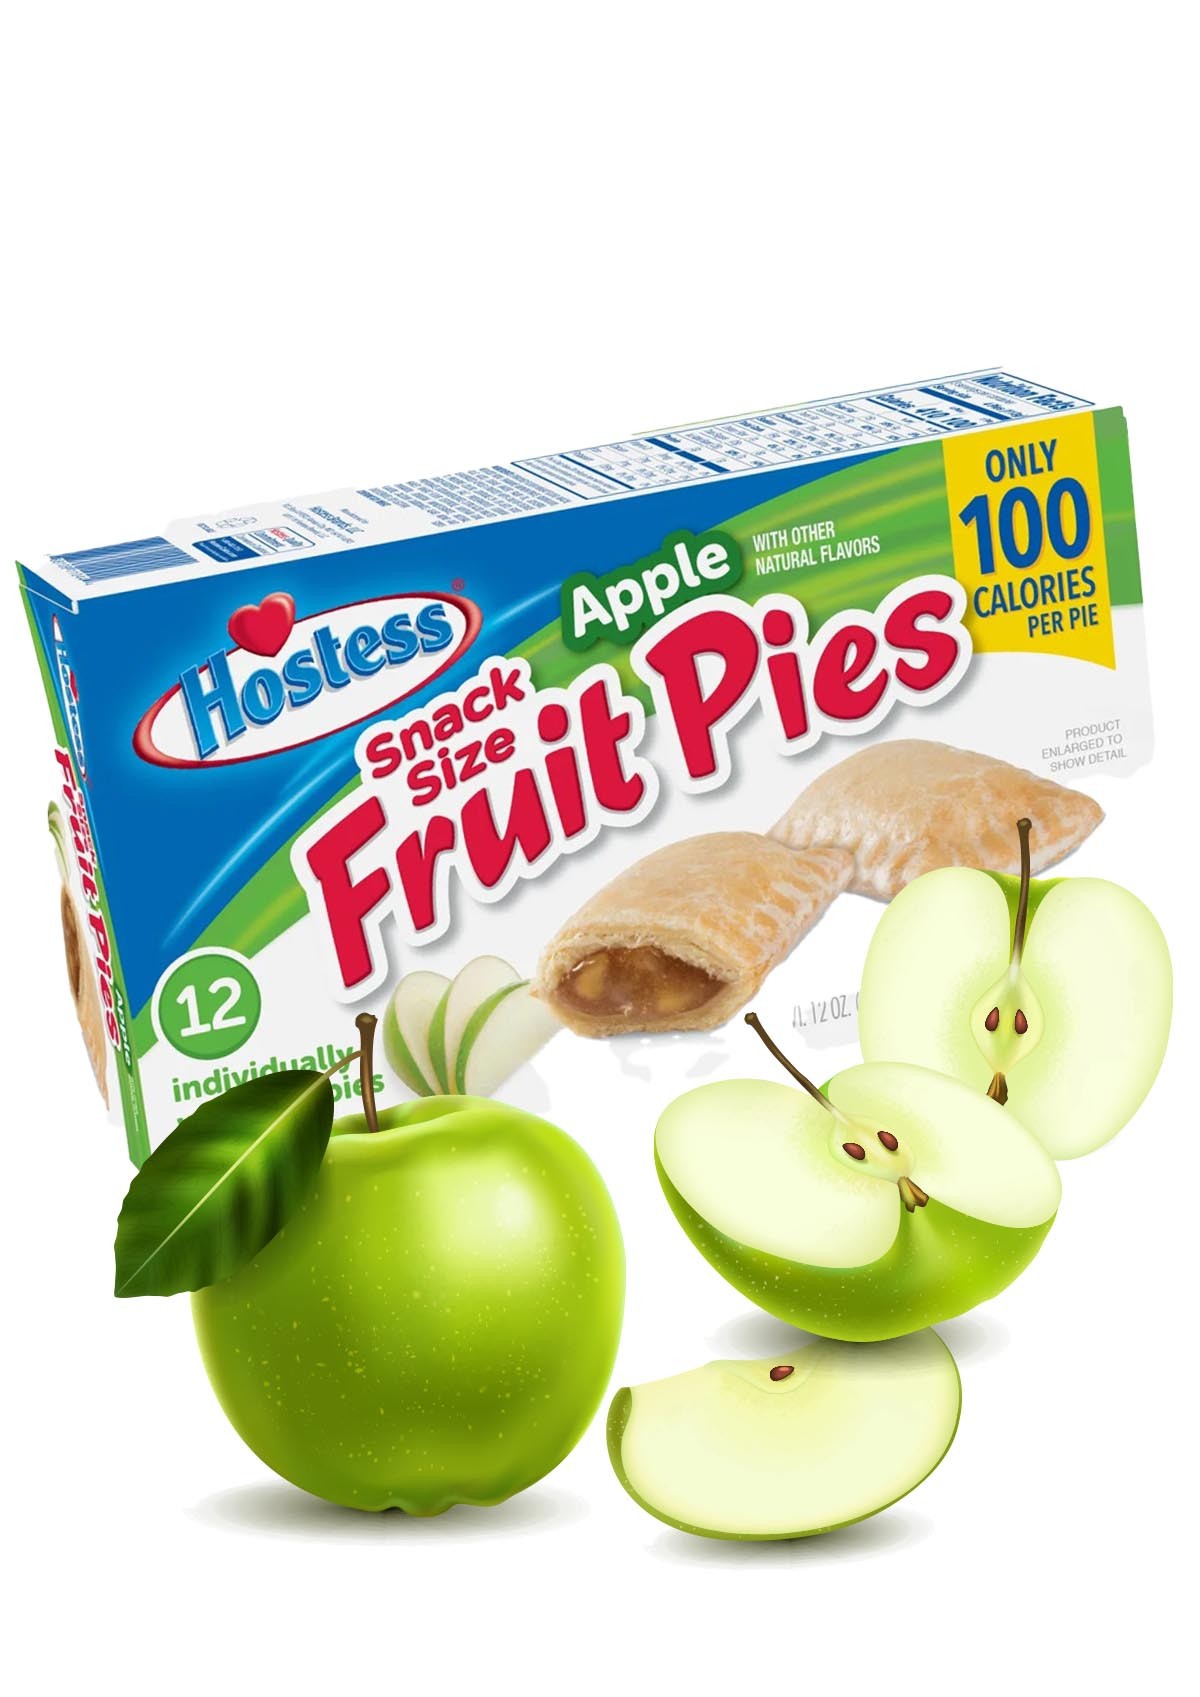 Hostess Fruit Apple Pie - 1 Pck 12 Stck